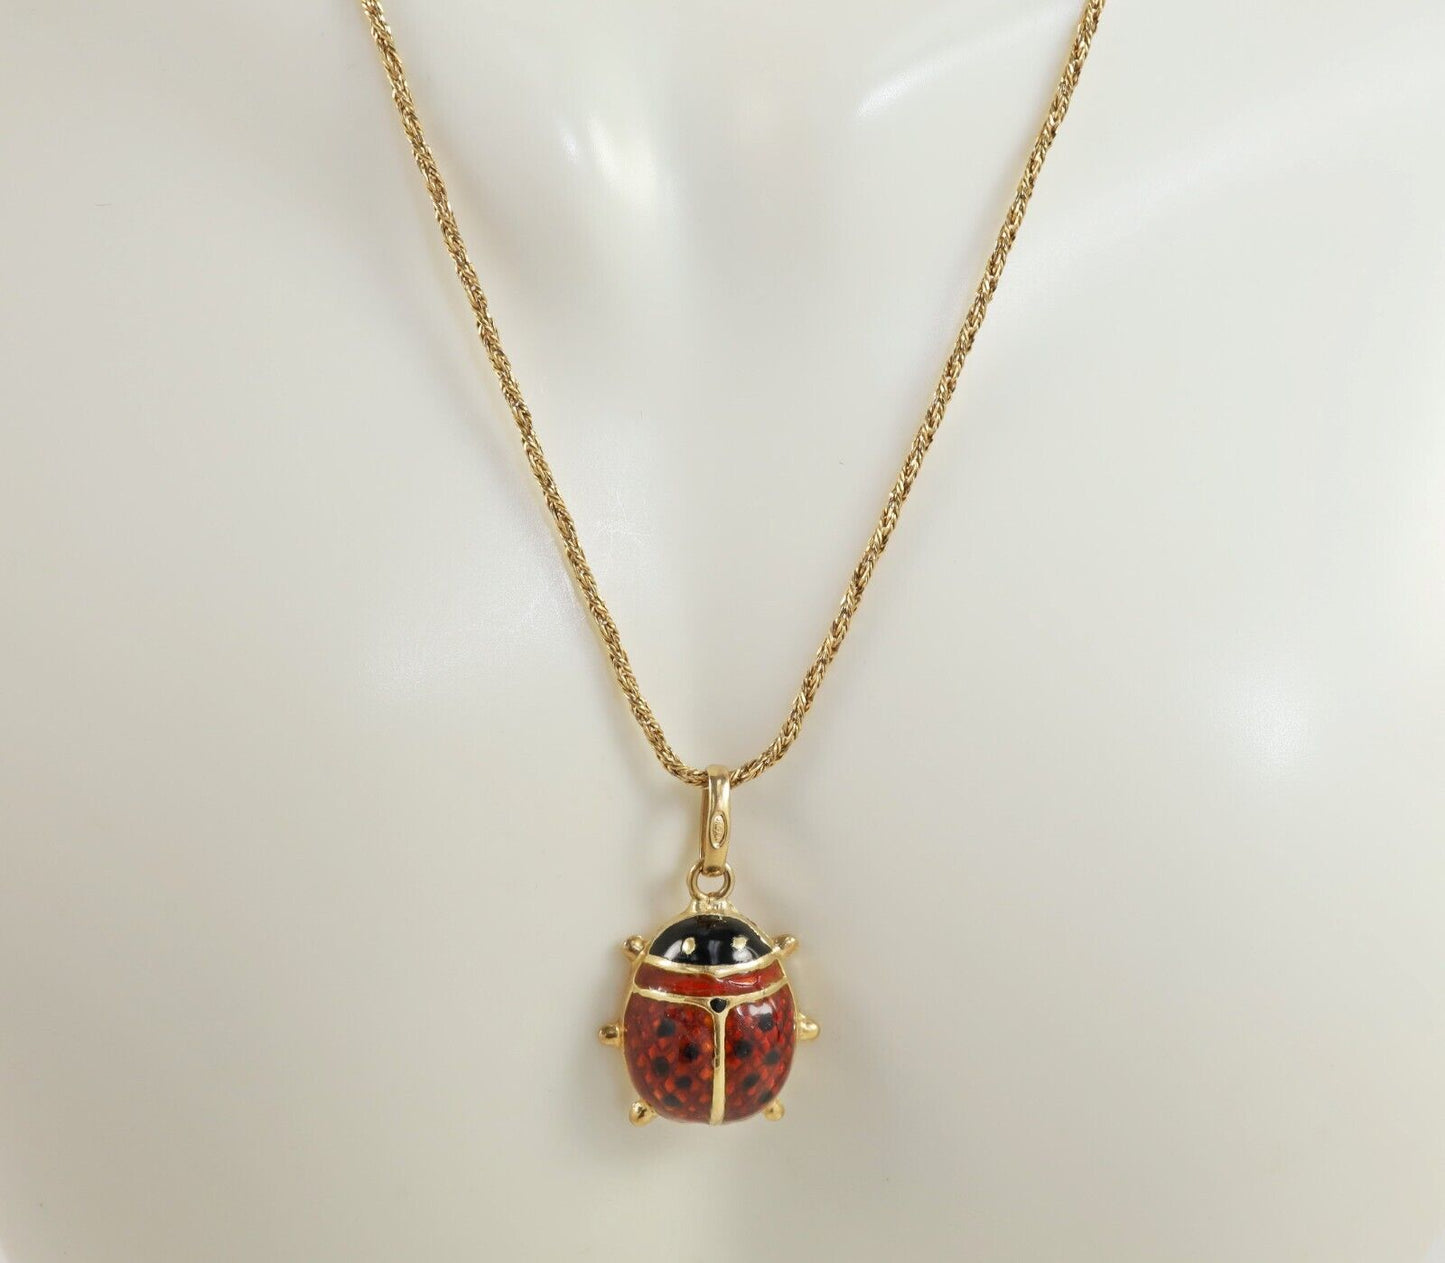 18k Yellow Gold Ladybug Pendant Necklace, 17 inches - 4.8g